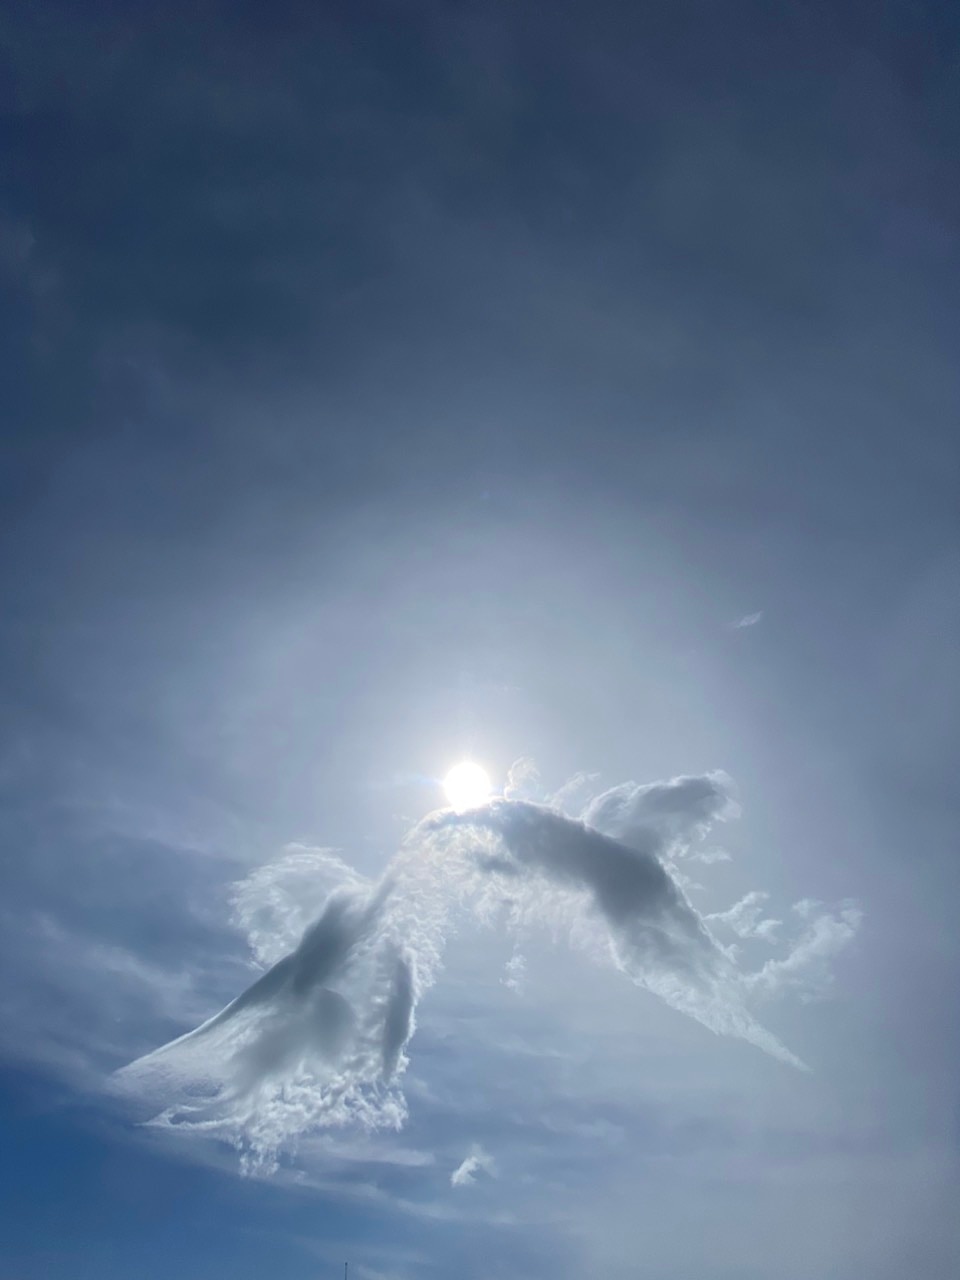 Kỳ thú hình mây cá chép hóa rồng trên đỉnh Núi Bà Đen Tây Ninh